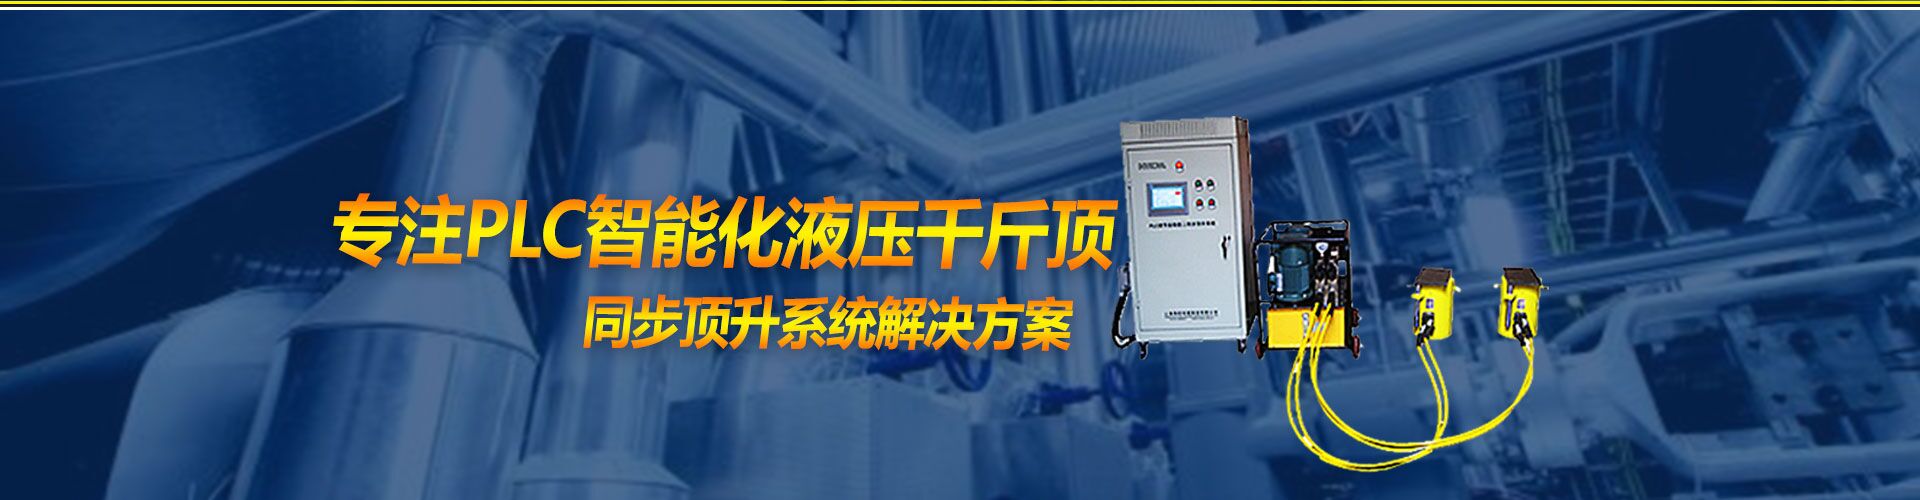 上海海塔机械制造有限公司